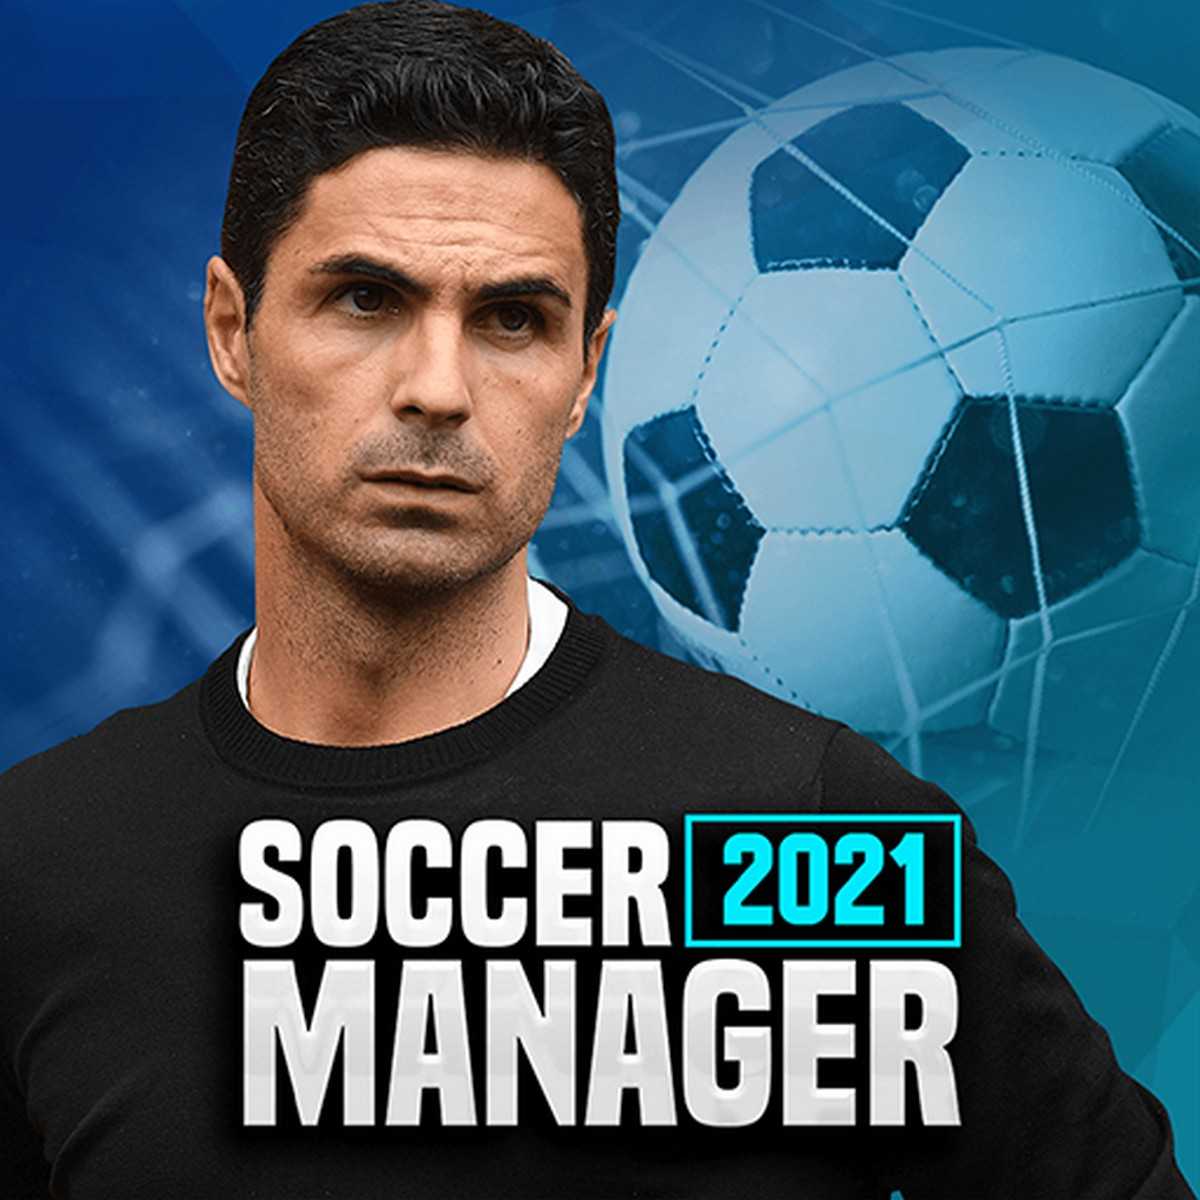 Soccer Manager 2021 – Football Management Game v2.1.0 (Mod) Apk